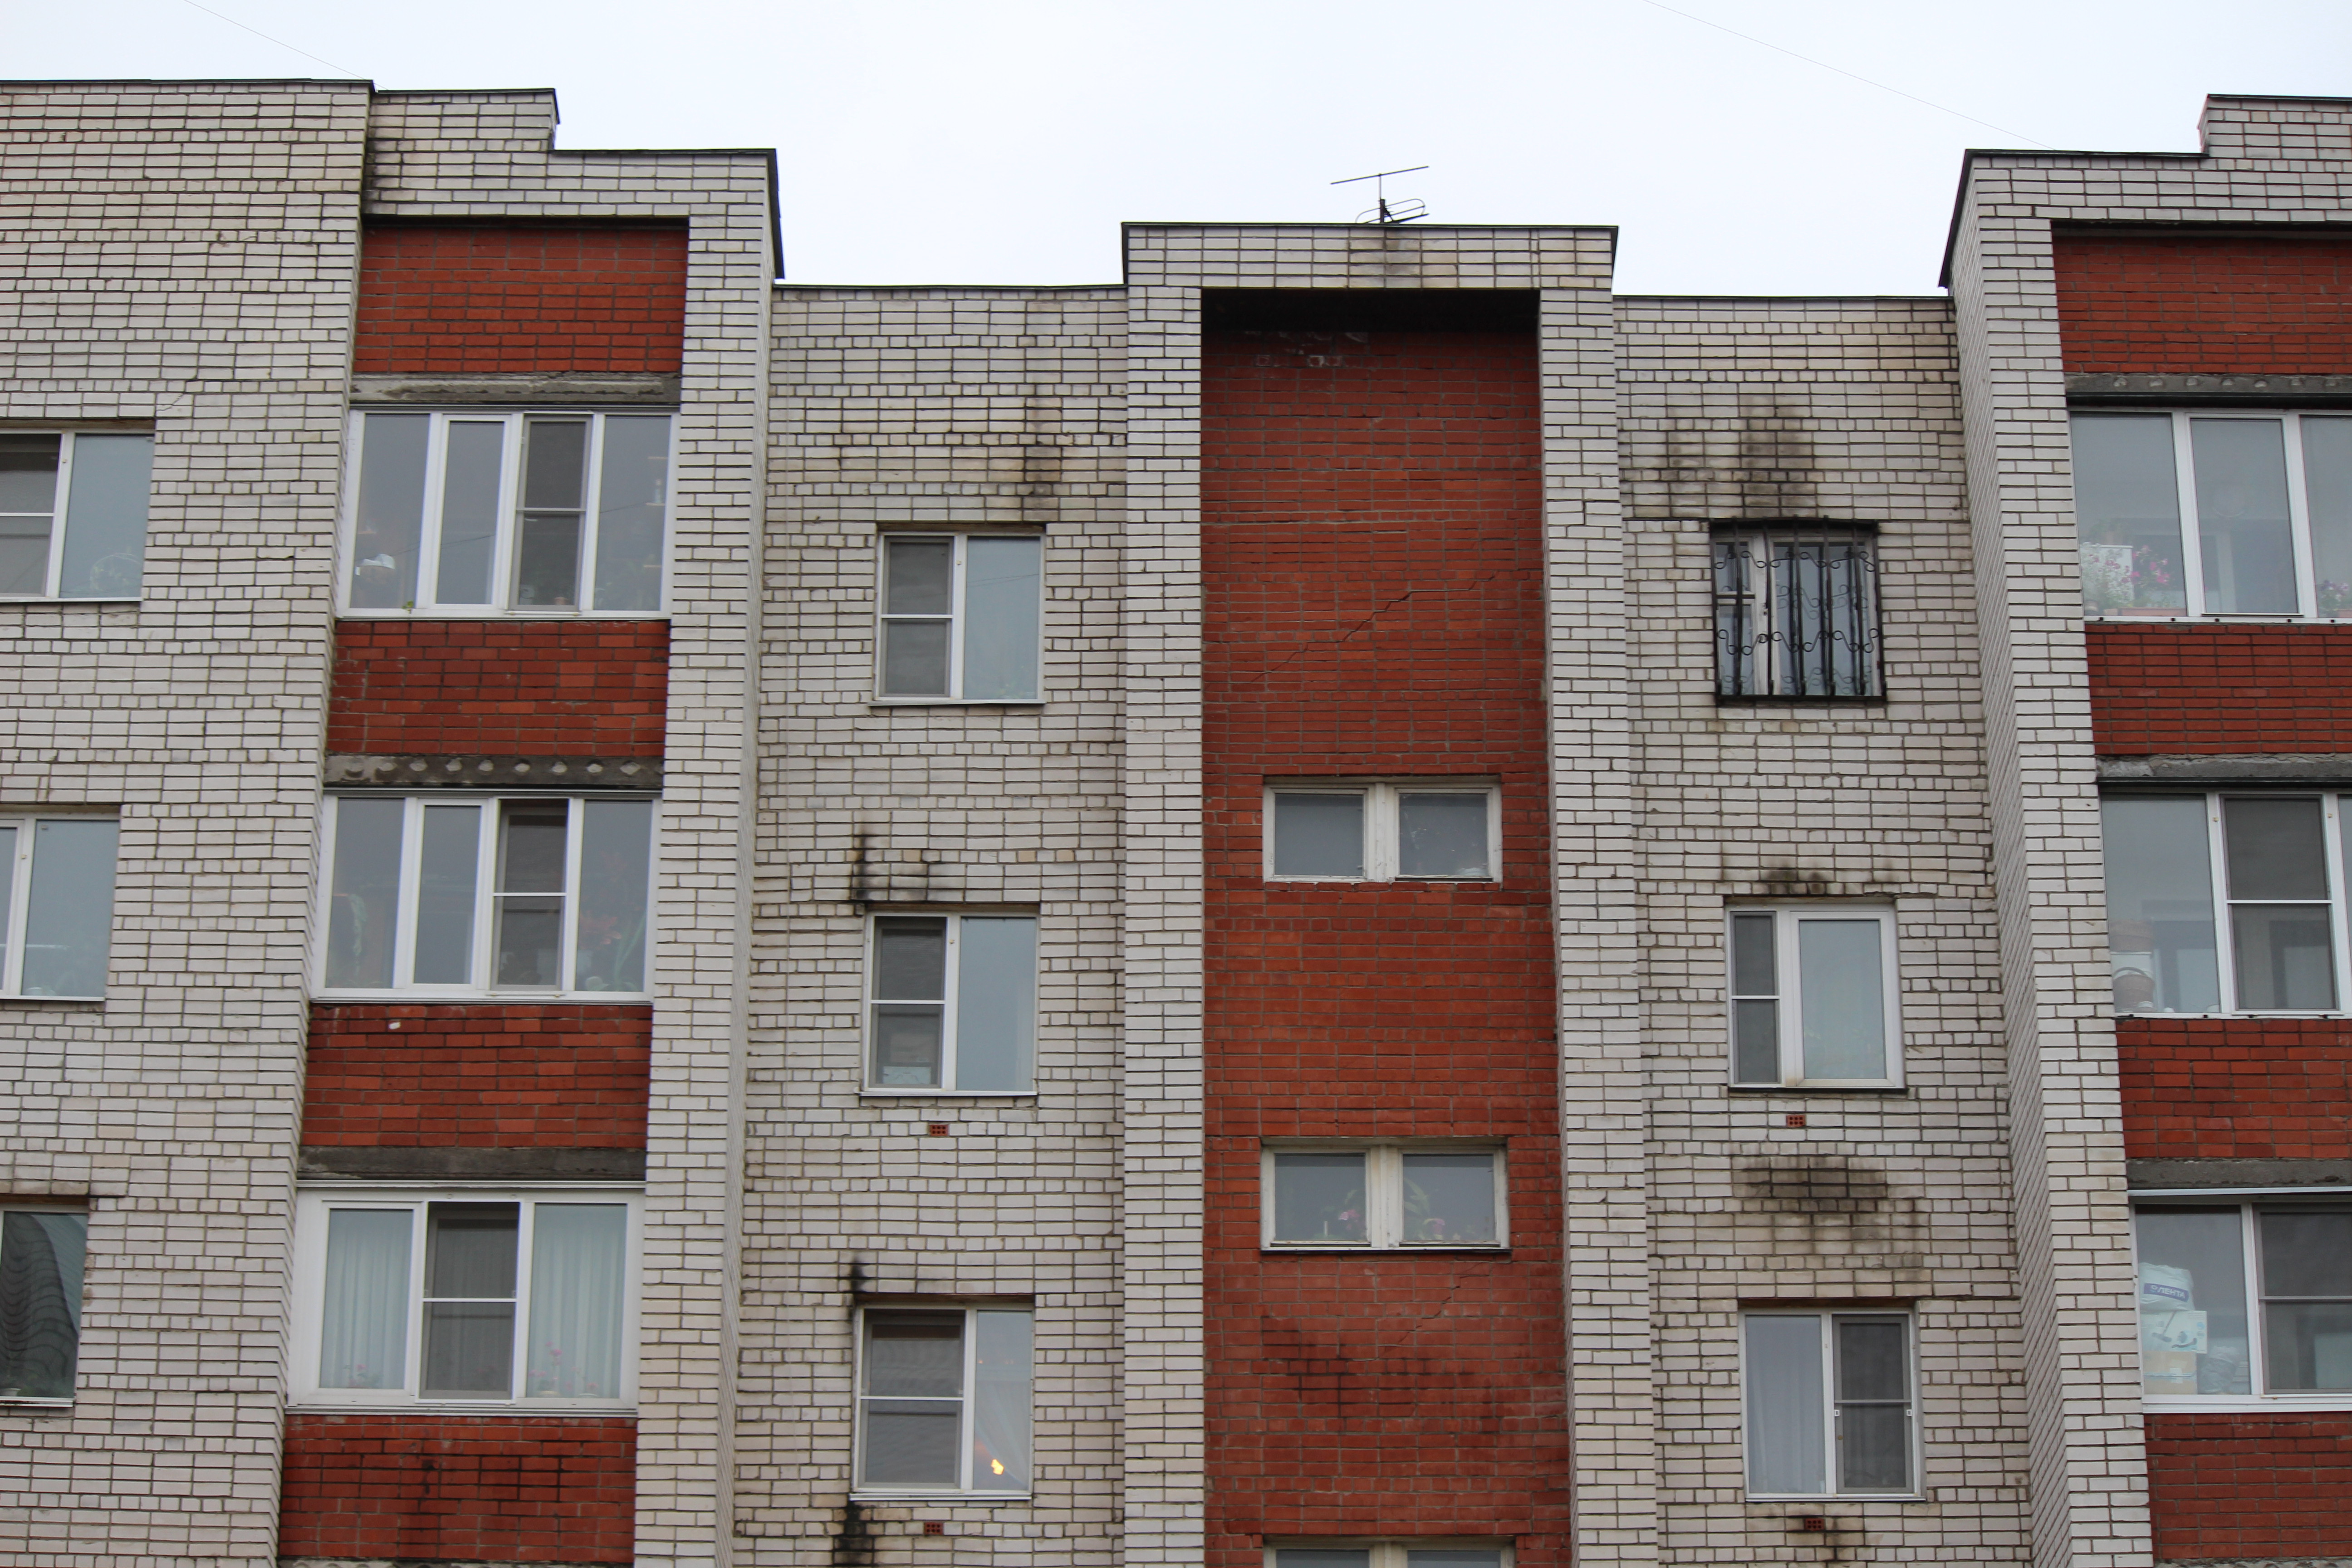 Дом на улице Ломоносова в Нижнем Новгороде покрылся трещинами (ФОТО) - фото 1